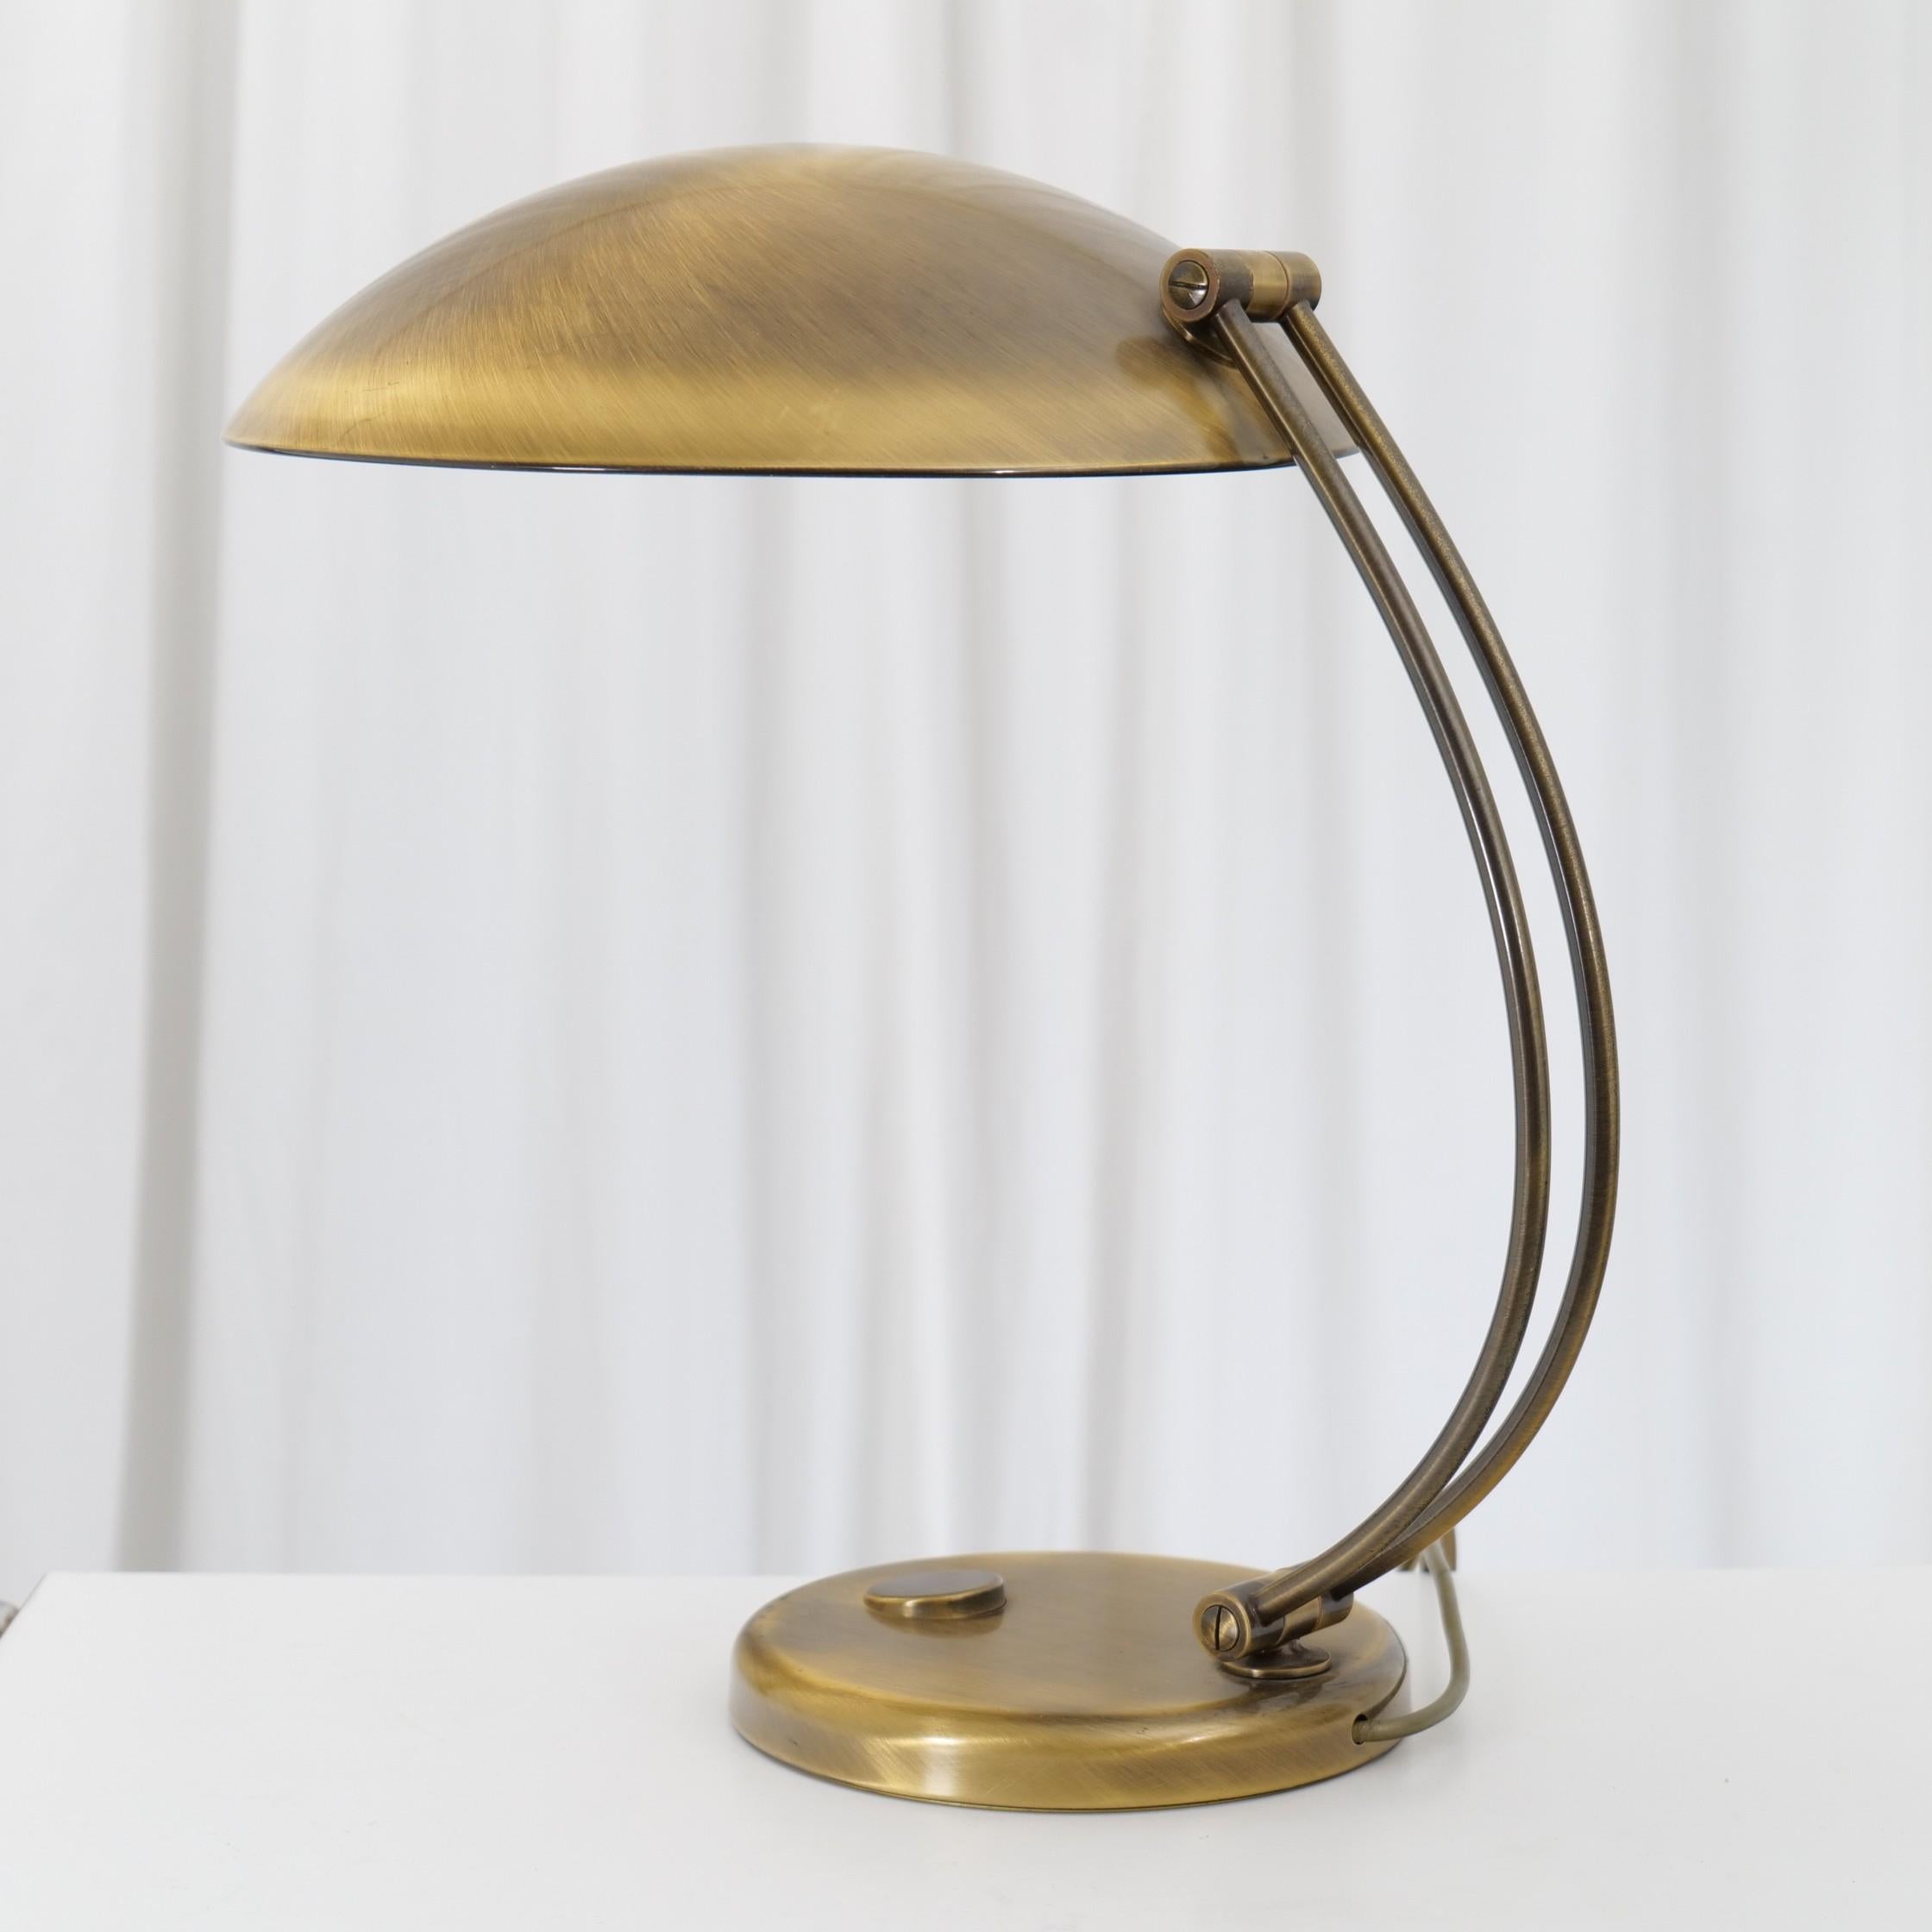 German Vintage Mid Century Brass Desk Lamp by Hillebrand